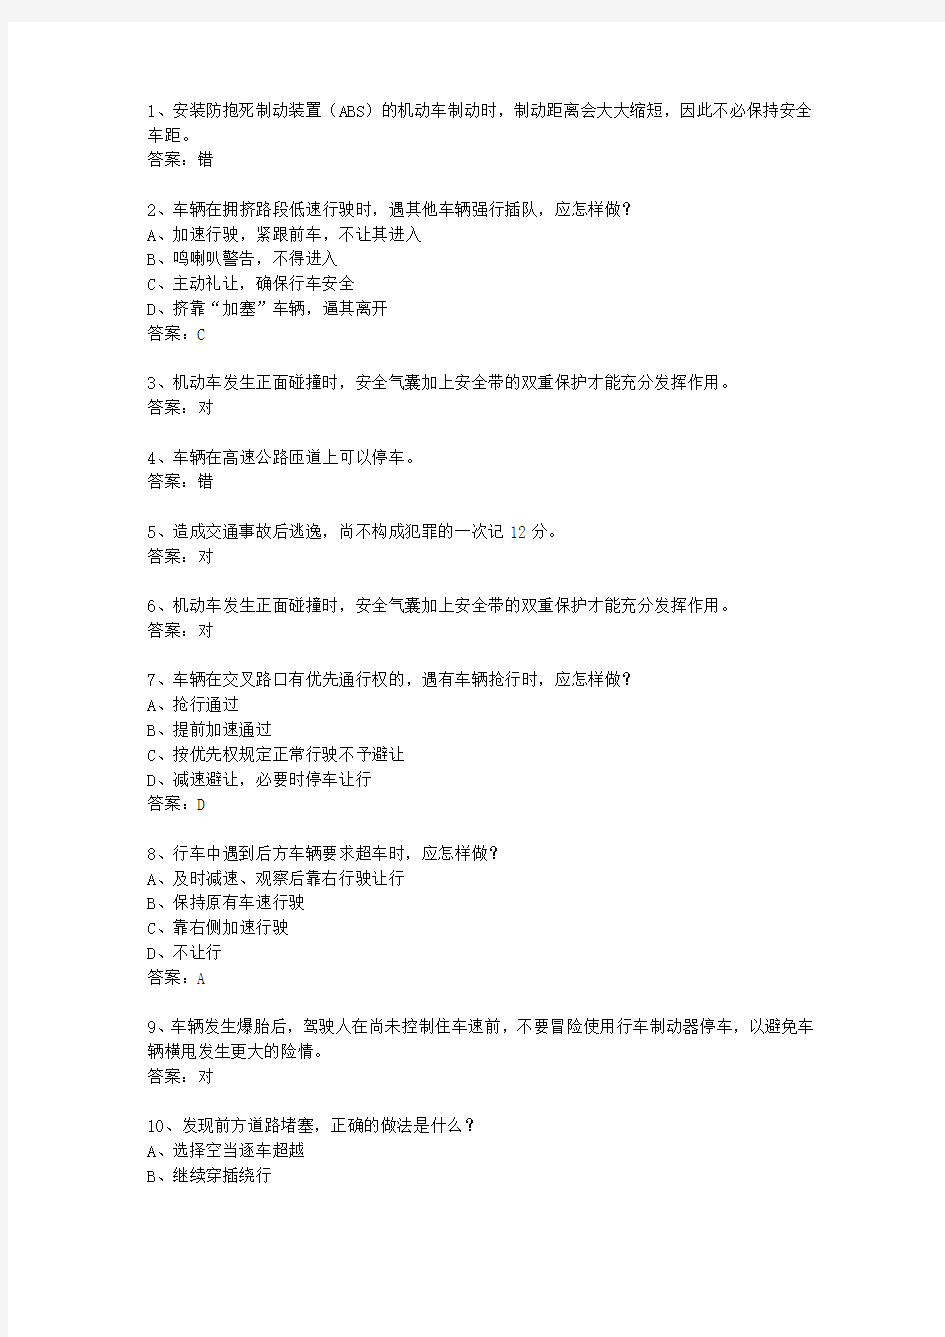 2014湖南省驾校考试科目一自动档最新考试题库(完整版)_图文